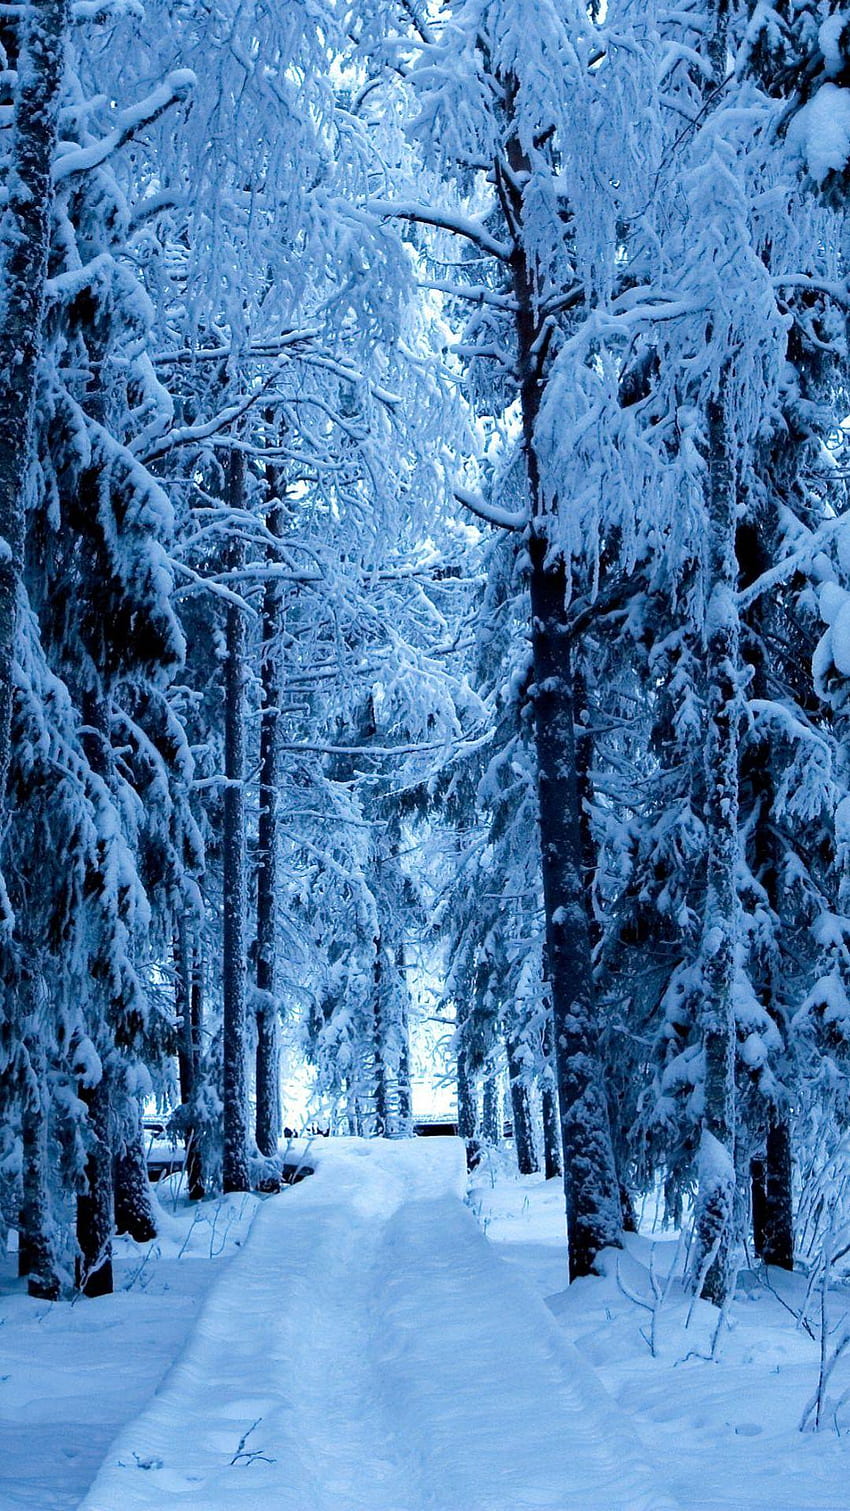 並木道の雪景色。 .sc スマートフォン HD電話の壁紙